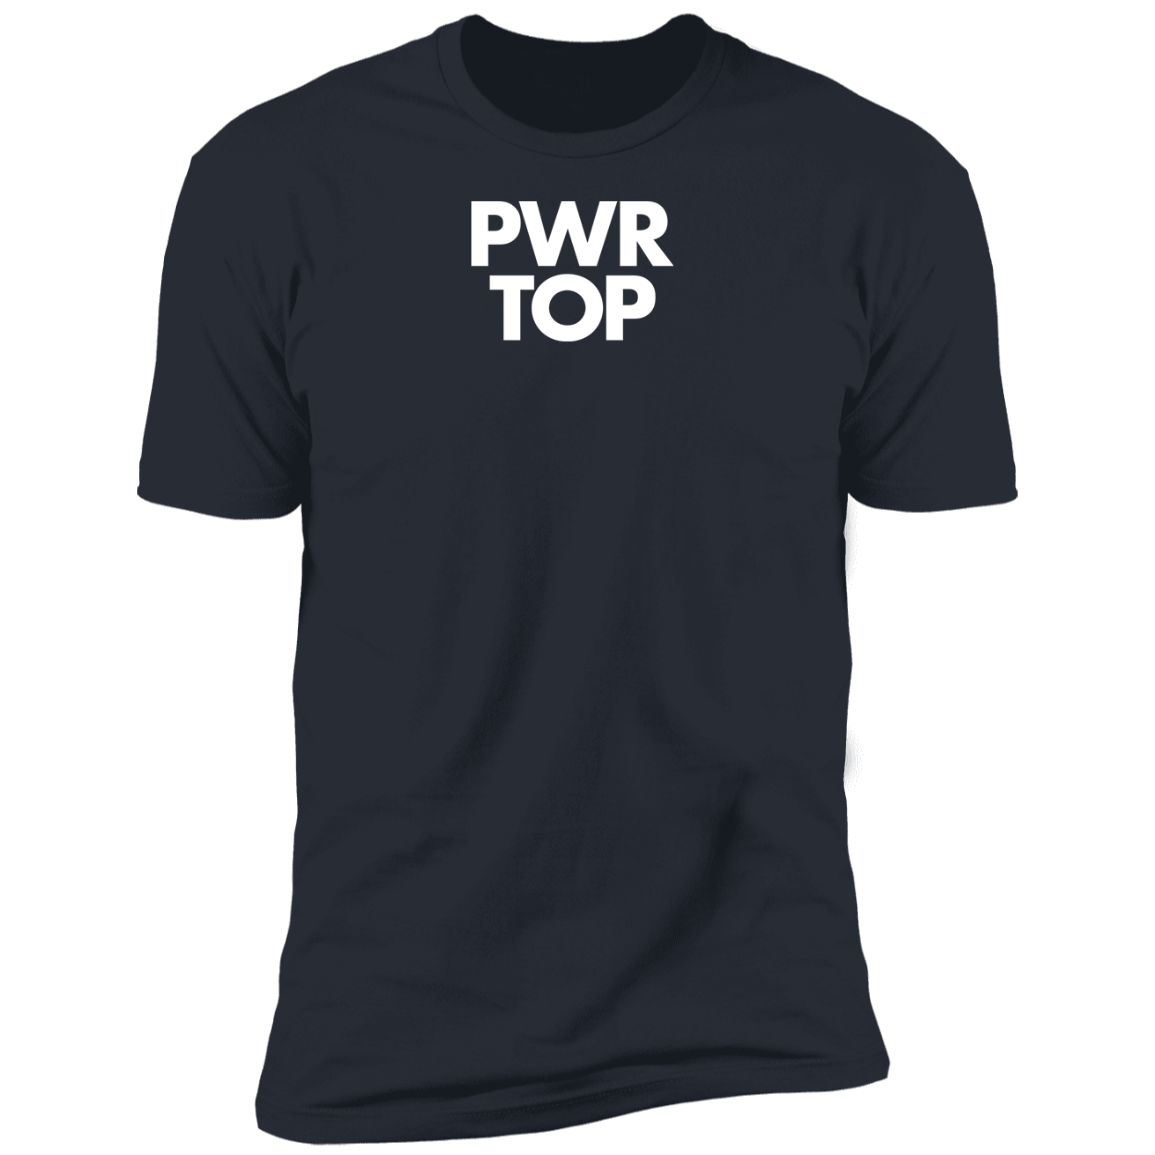 Hustler PWR TOP T-Shirt